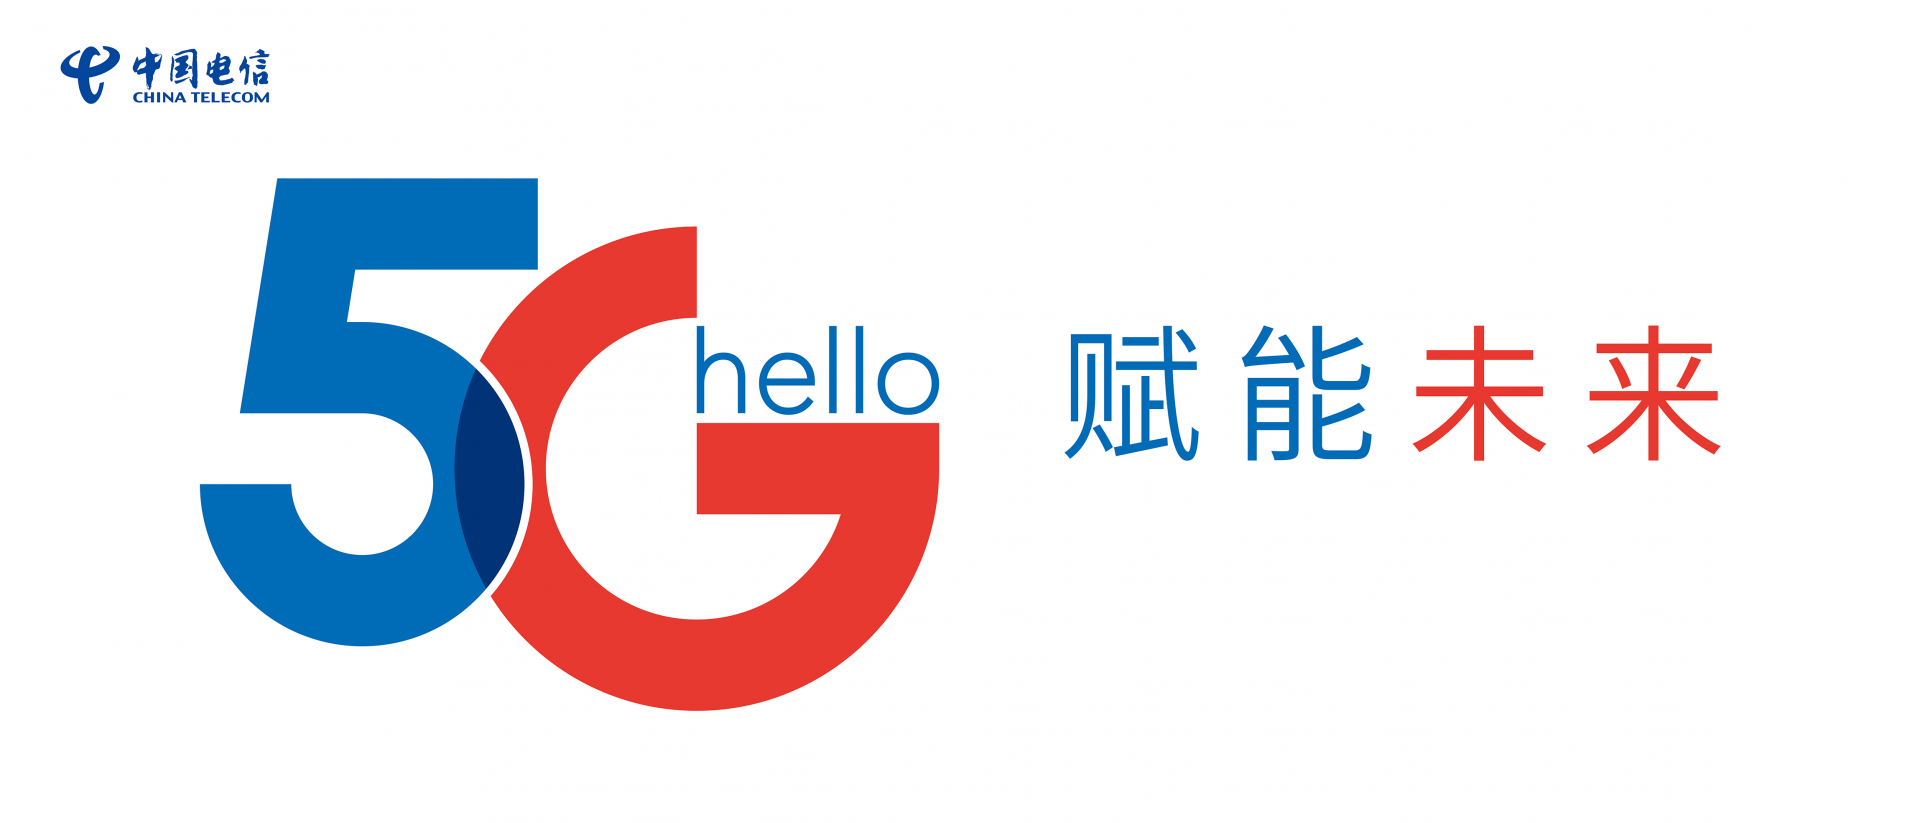 一场特别的欢迎礼——中国电信安徽公司开启"5g进校园